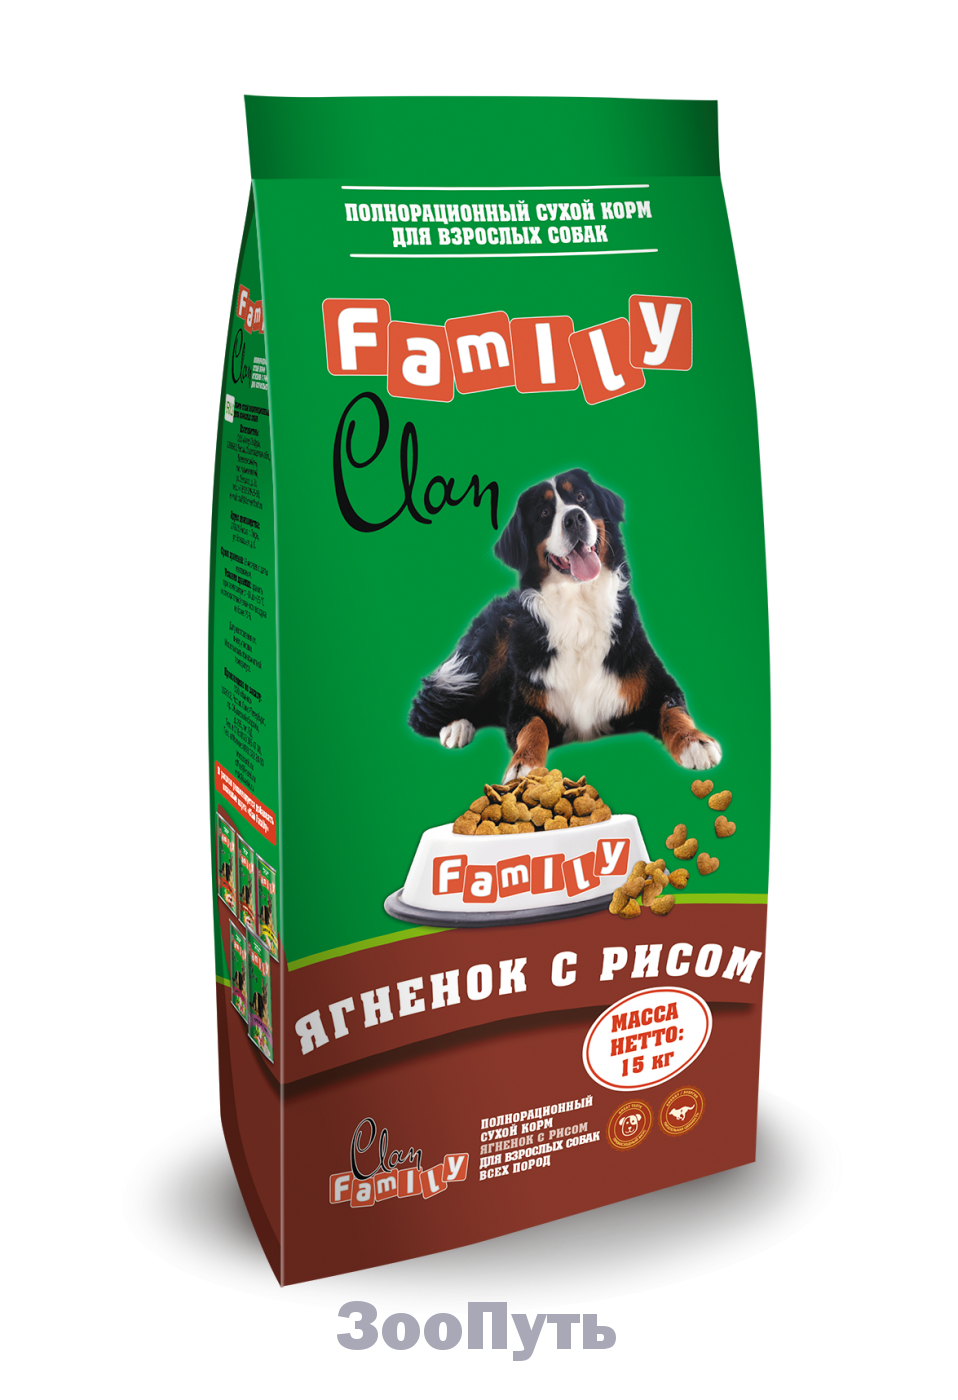 Фото: Clan Family сухой гипоаллергенный корм для взрослых собак, 15 кг. Магазин для животных ЗооПуть